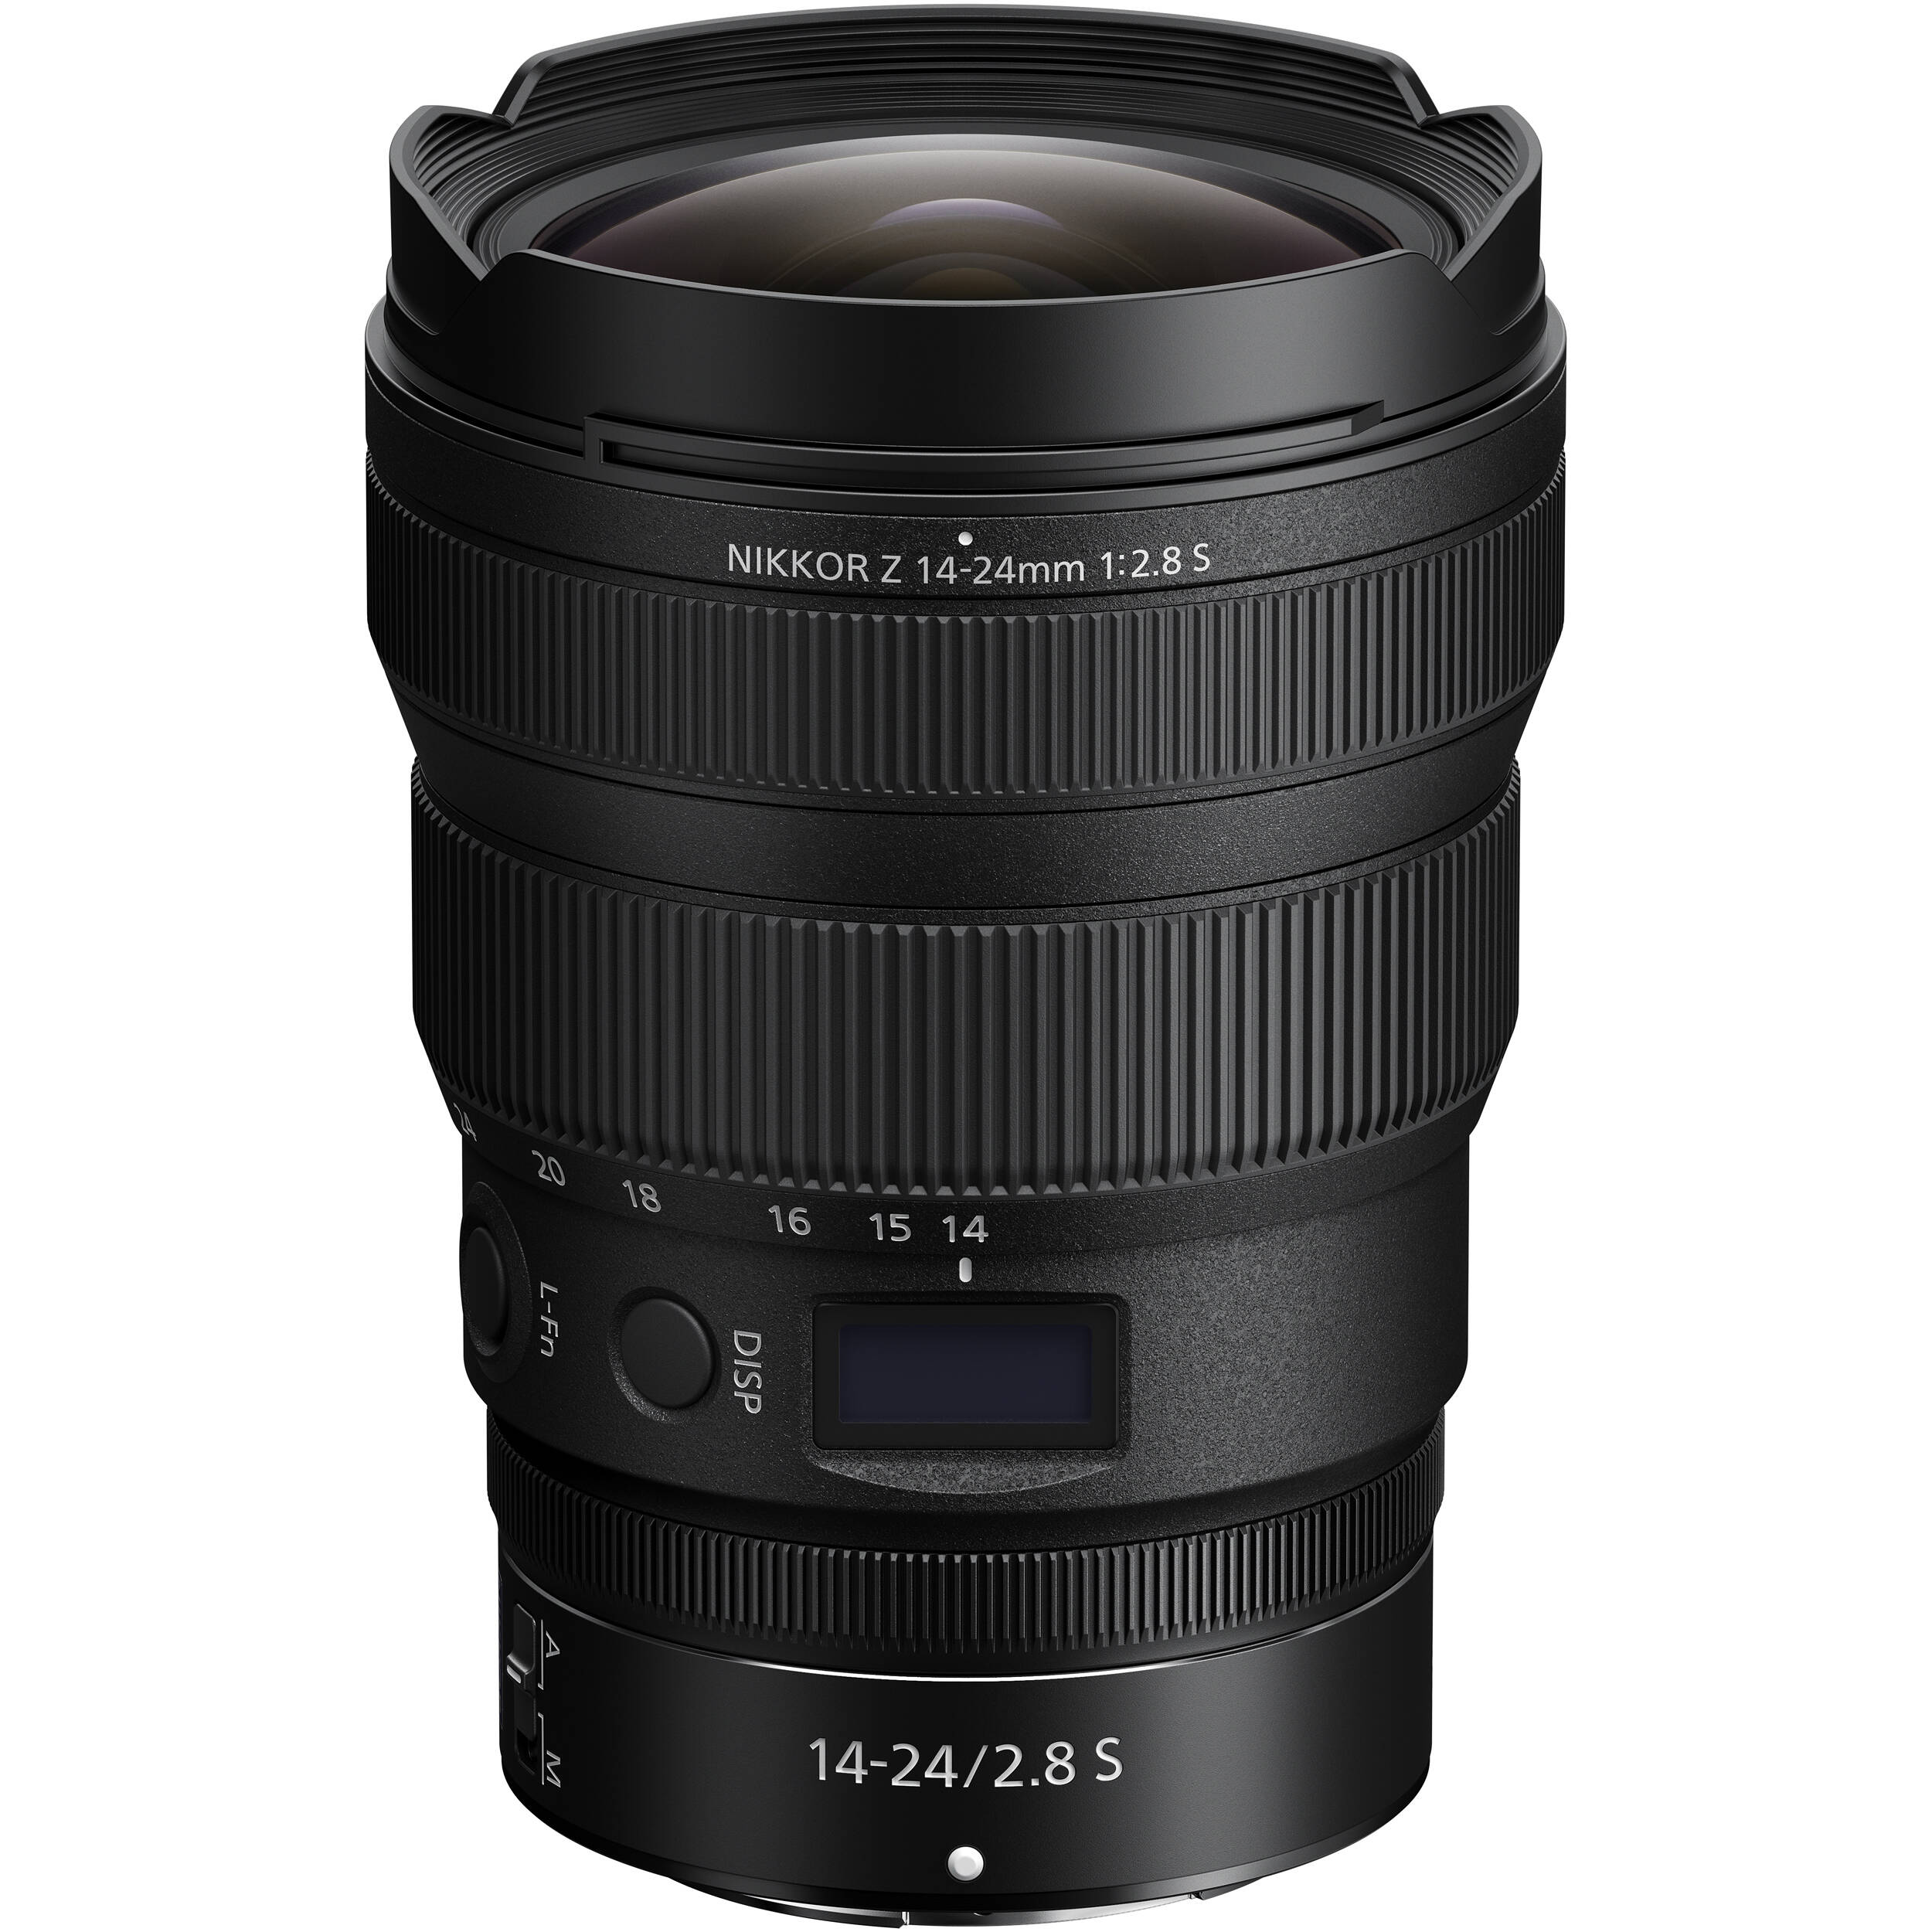 Ống kính Nikon Z 14-24mm f/2.8 S - Thiết kế chống bụi, chống ẩm